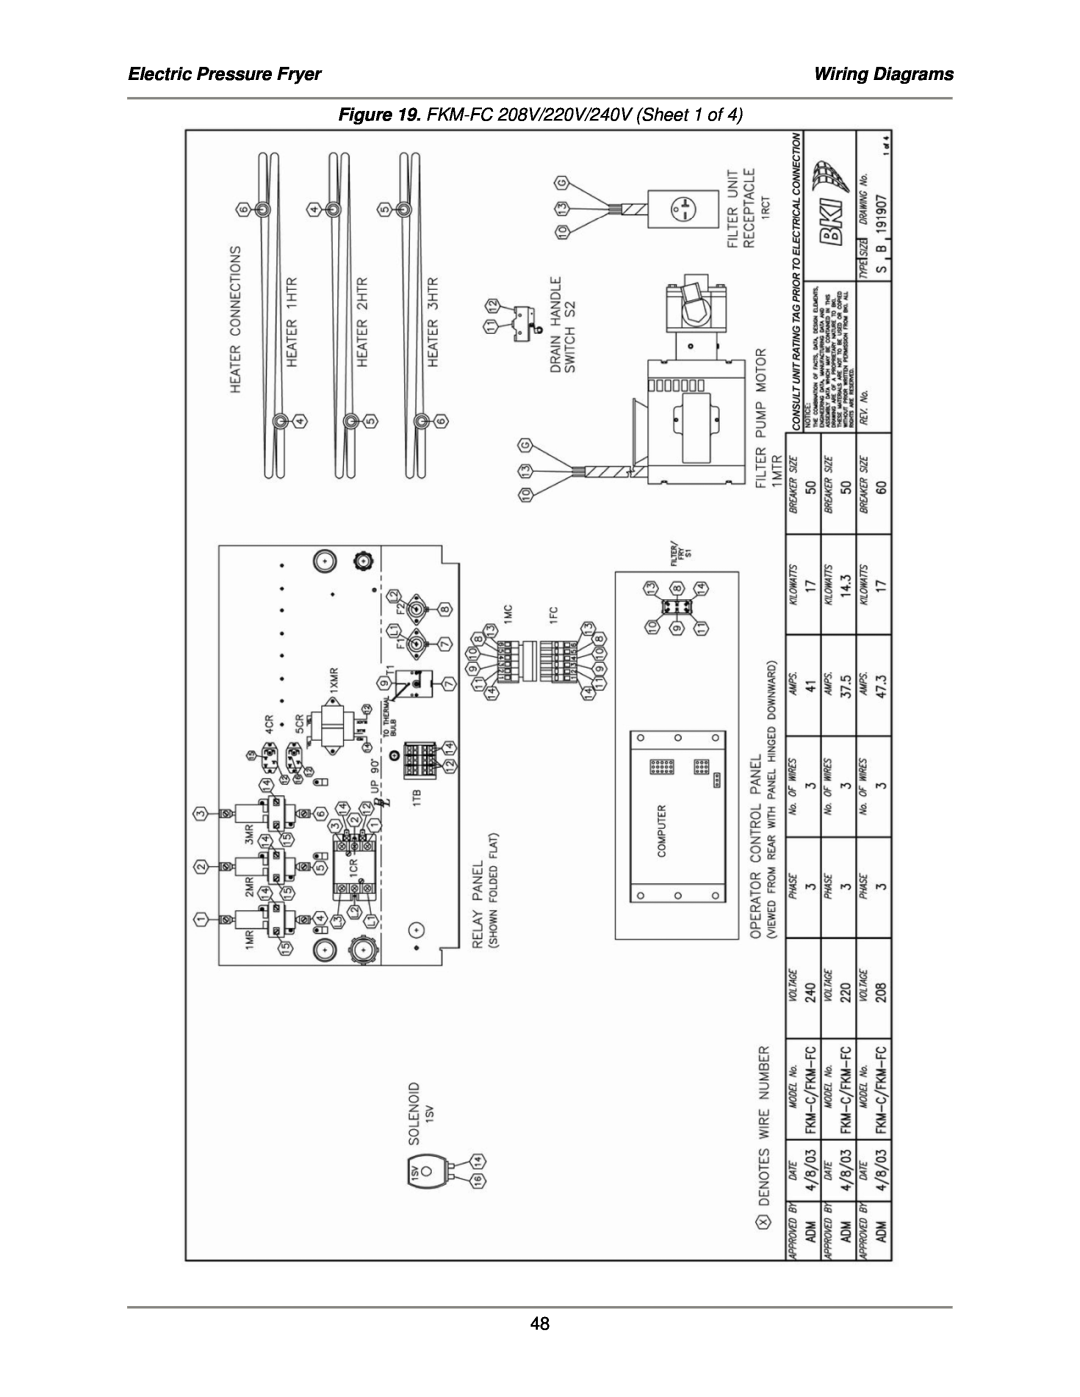 Bakers Pride Oven service manual Electric Pressure Fryer, Wiring Diagrams, FKM-FC208V/220V/240V Sheet 1 of 